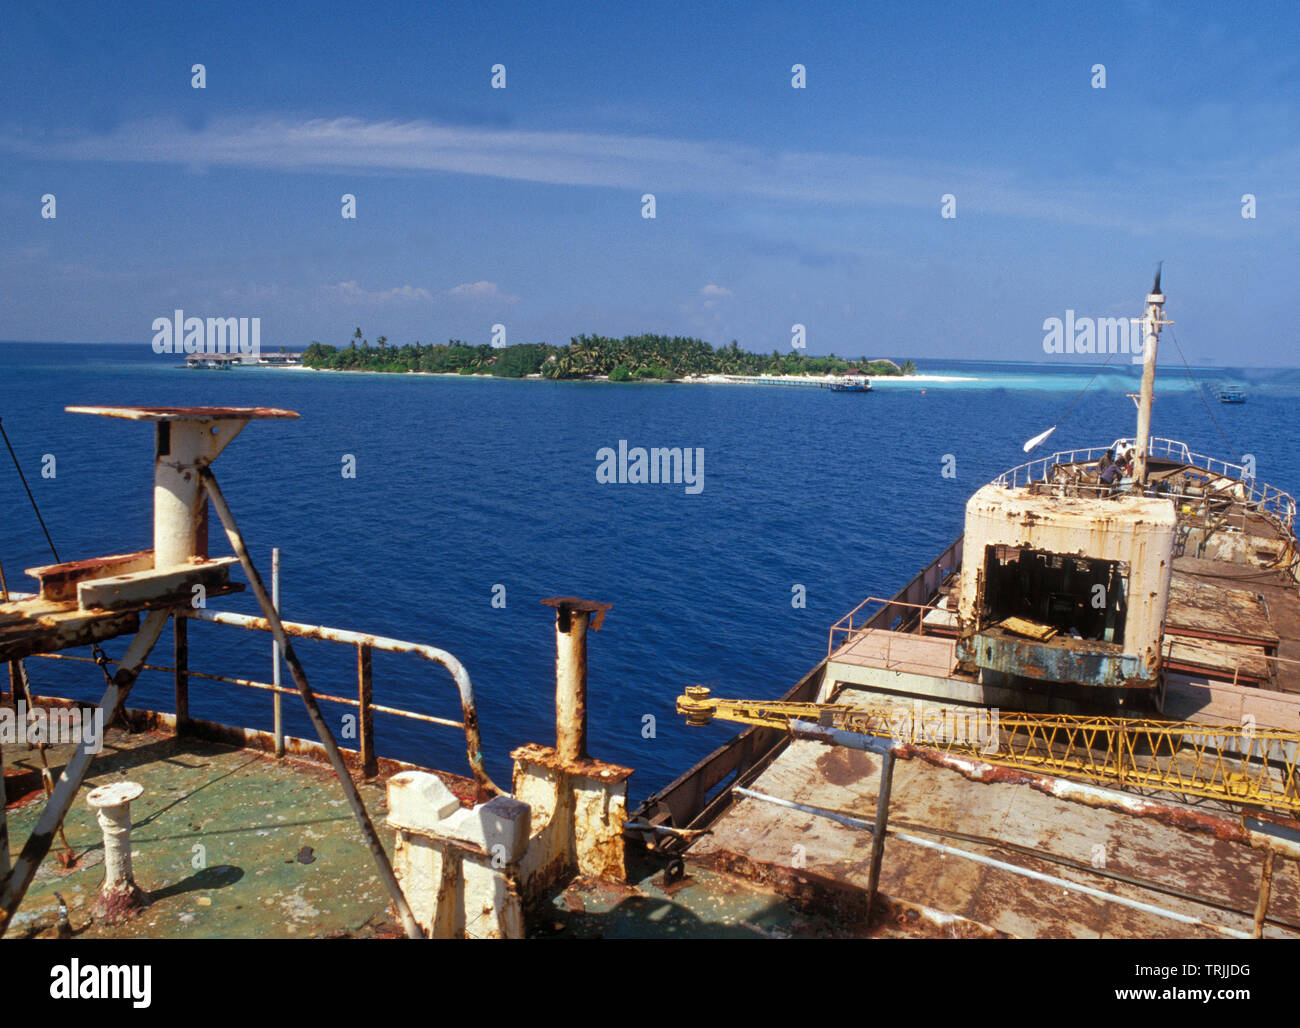 Le wreckship Kudih fret Ma est porté à l'île et là pour être envoyé à la partie inférieure pour une meilleure e milieu sous-marin. Banque D'Images